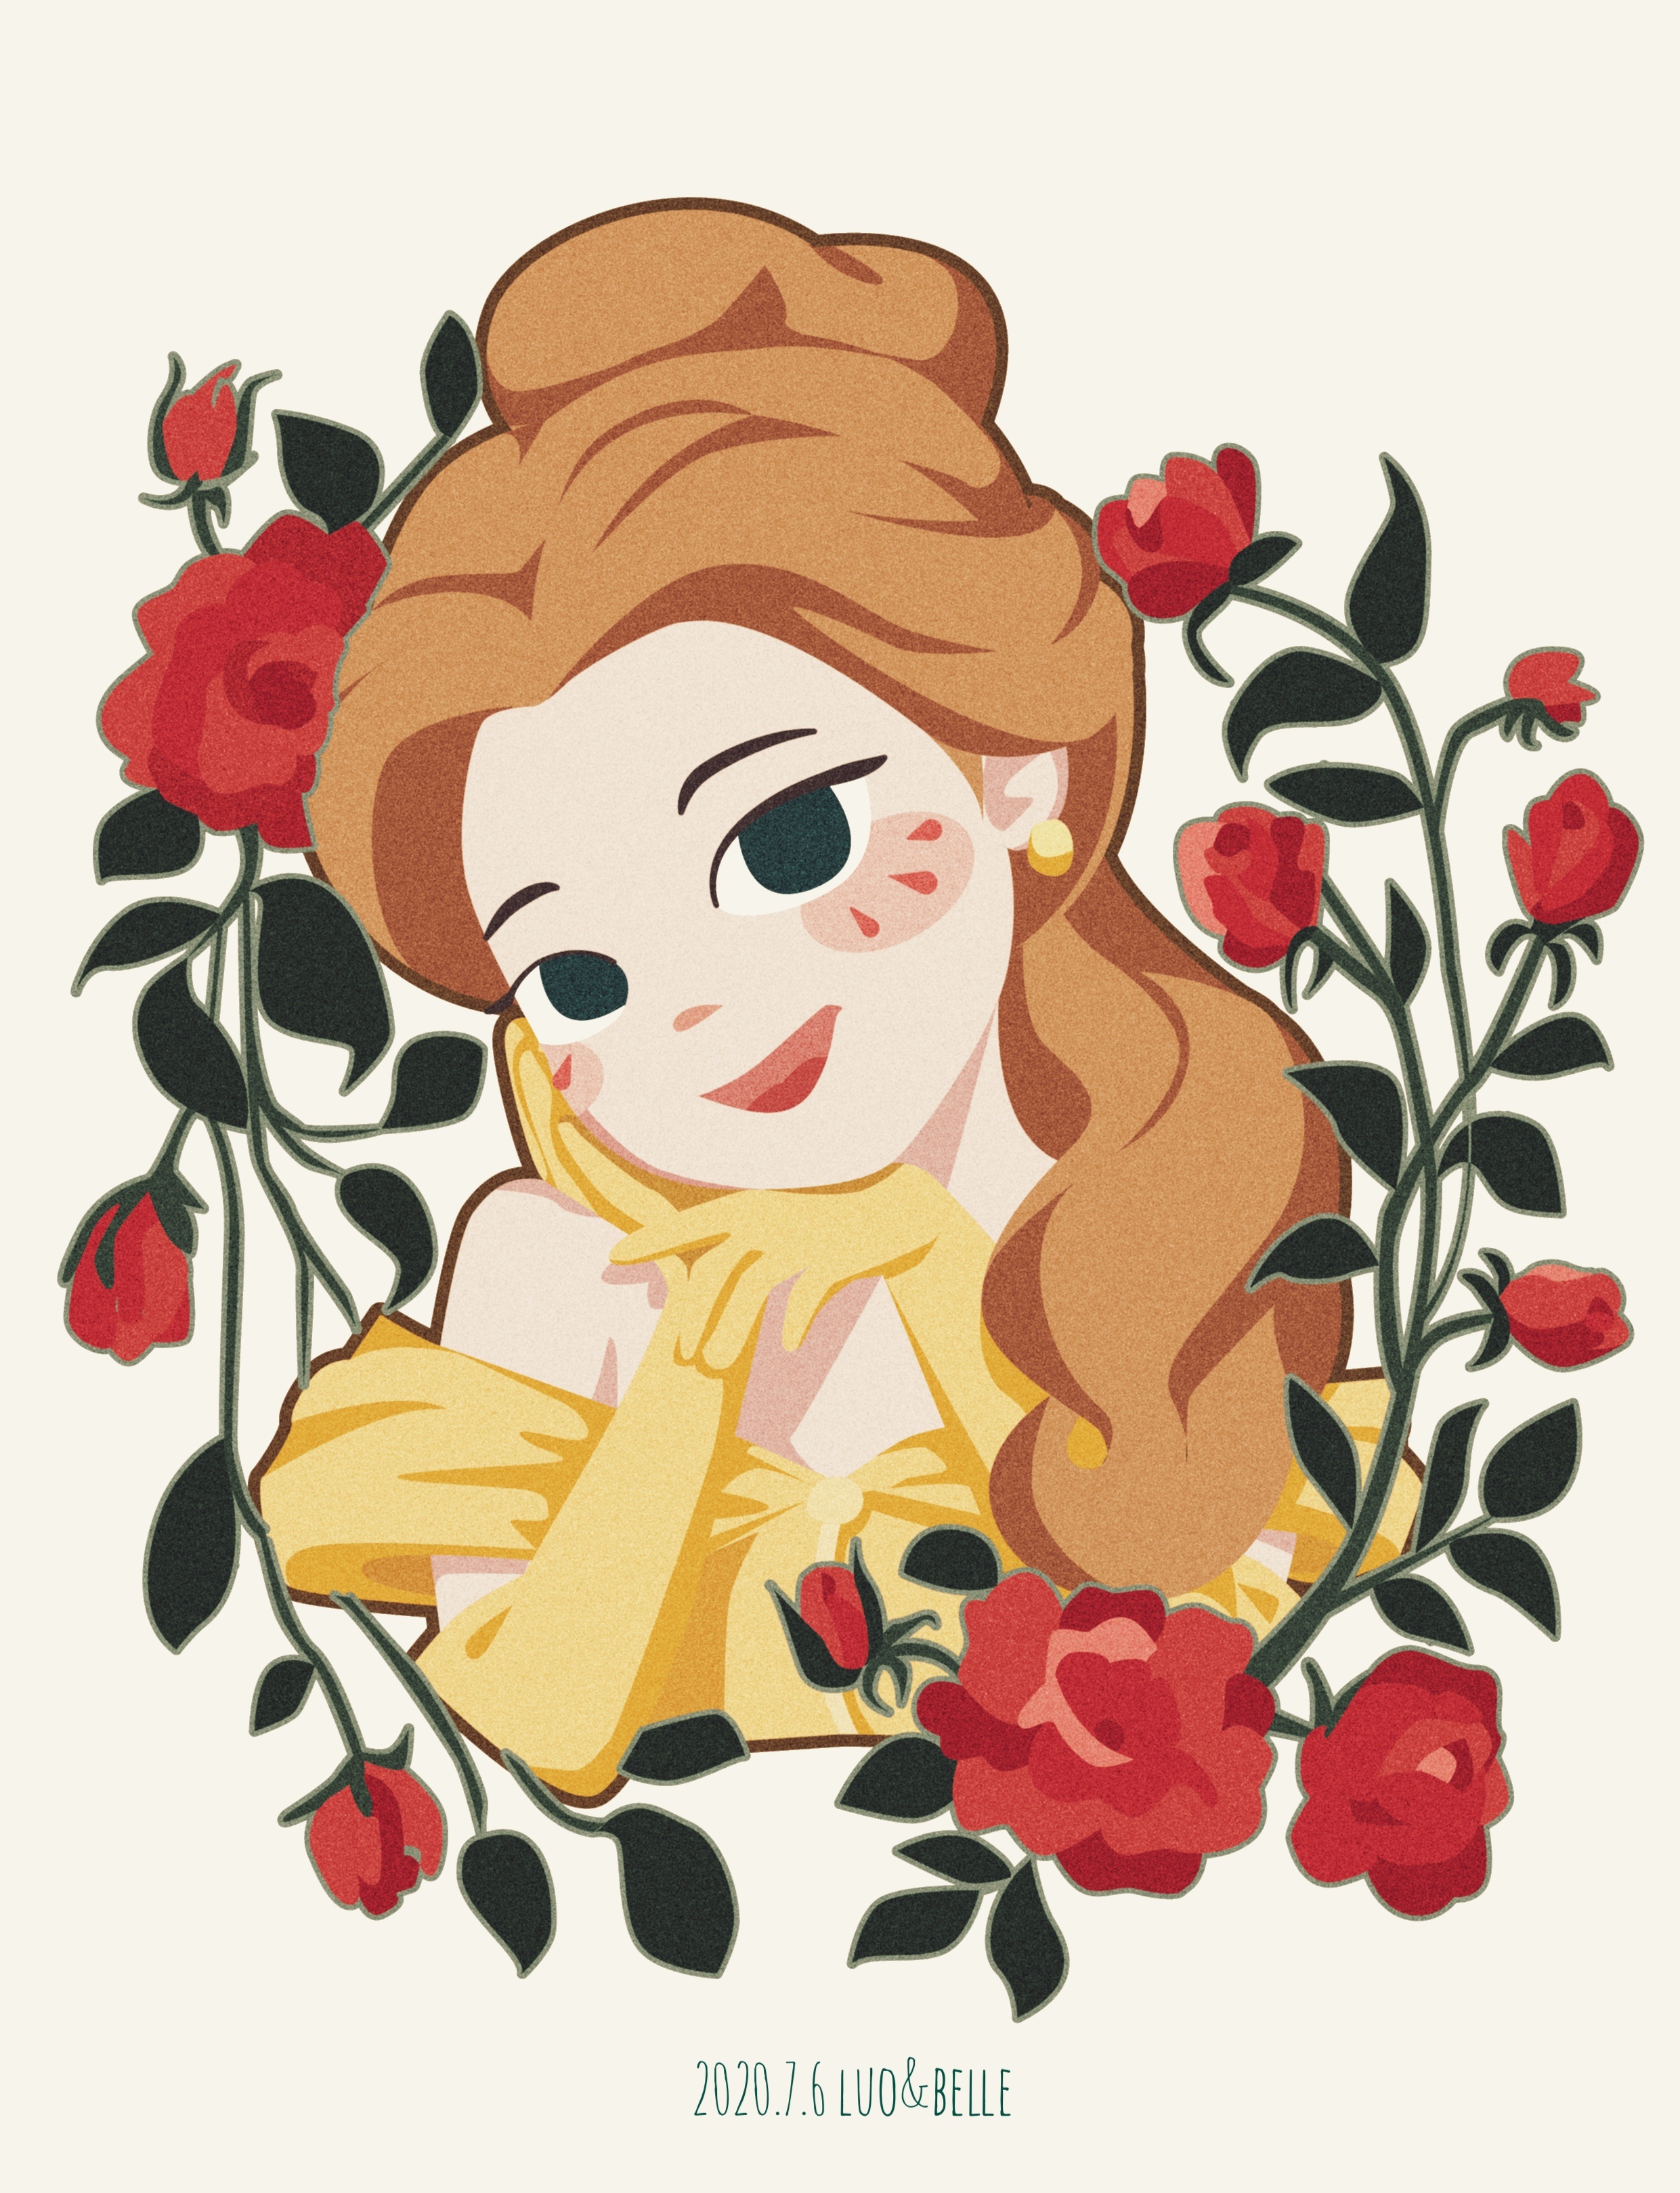 Ilustraciones-de-princesas-Disney-3.jpg (1200×1200)